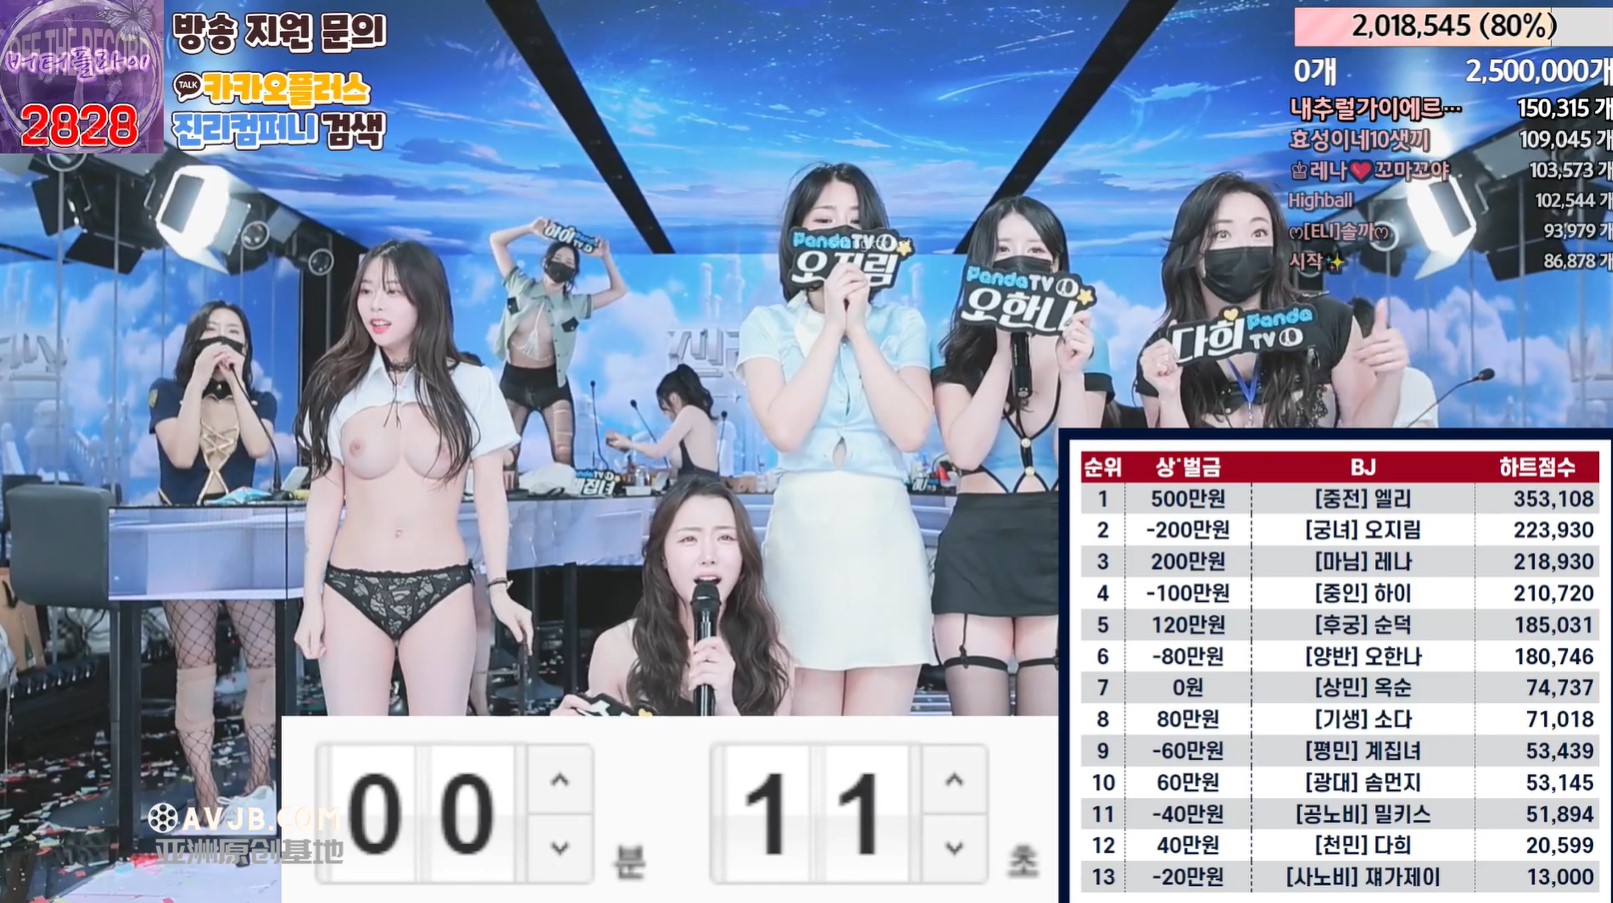 Vào tháng 3 năm 2024, Wang Zha, một nhóm nhạc nữ phát sóng khiêu dâm trị giá 3.000 nhân dân tệ [jinricp] Nhóm nhạc nữ BJ Hàn Quốc xuất hiện, khỏa thân nhảy múa trên bầu trời lắc ngực trong 6 giờ, tranh giải thưởng